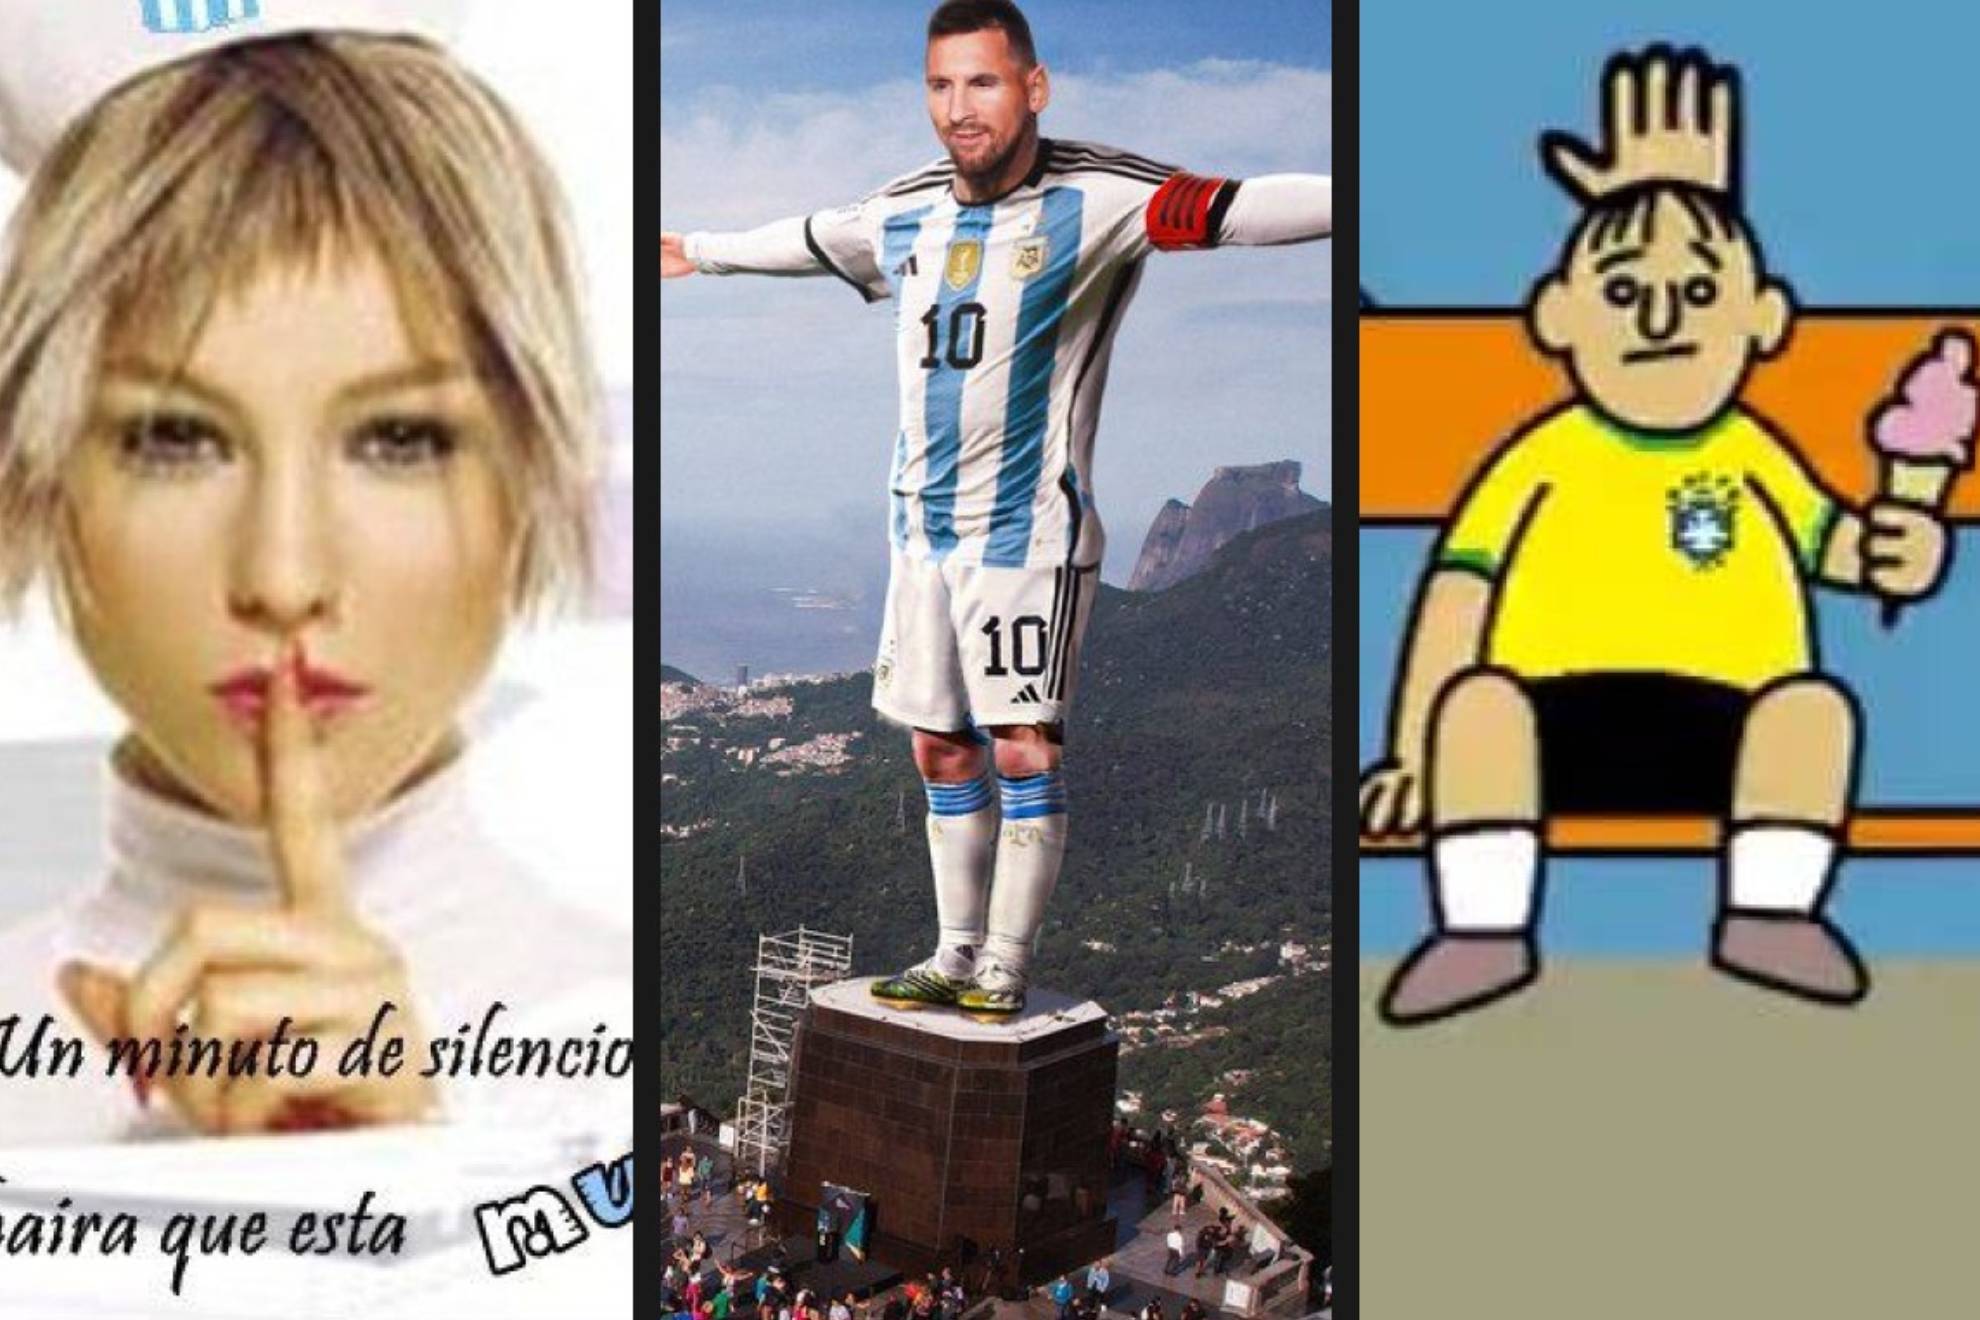 El partido que la Argentina de Leo Messi acab� ganando 0-1 a Brasil en Maracan� conquist� las redes sociales en forma de �cidos memes, s�tiras, burlas y bromas.